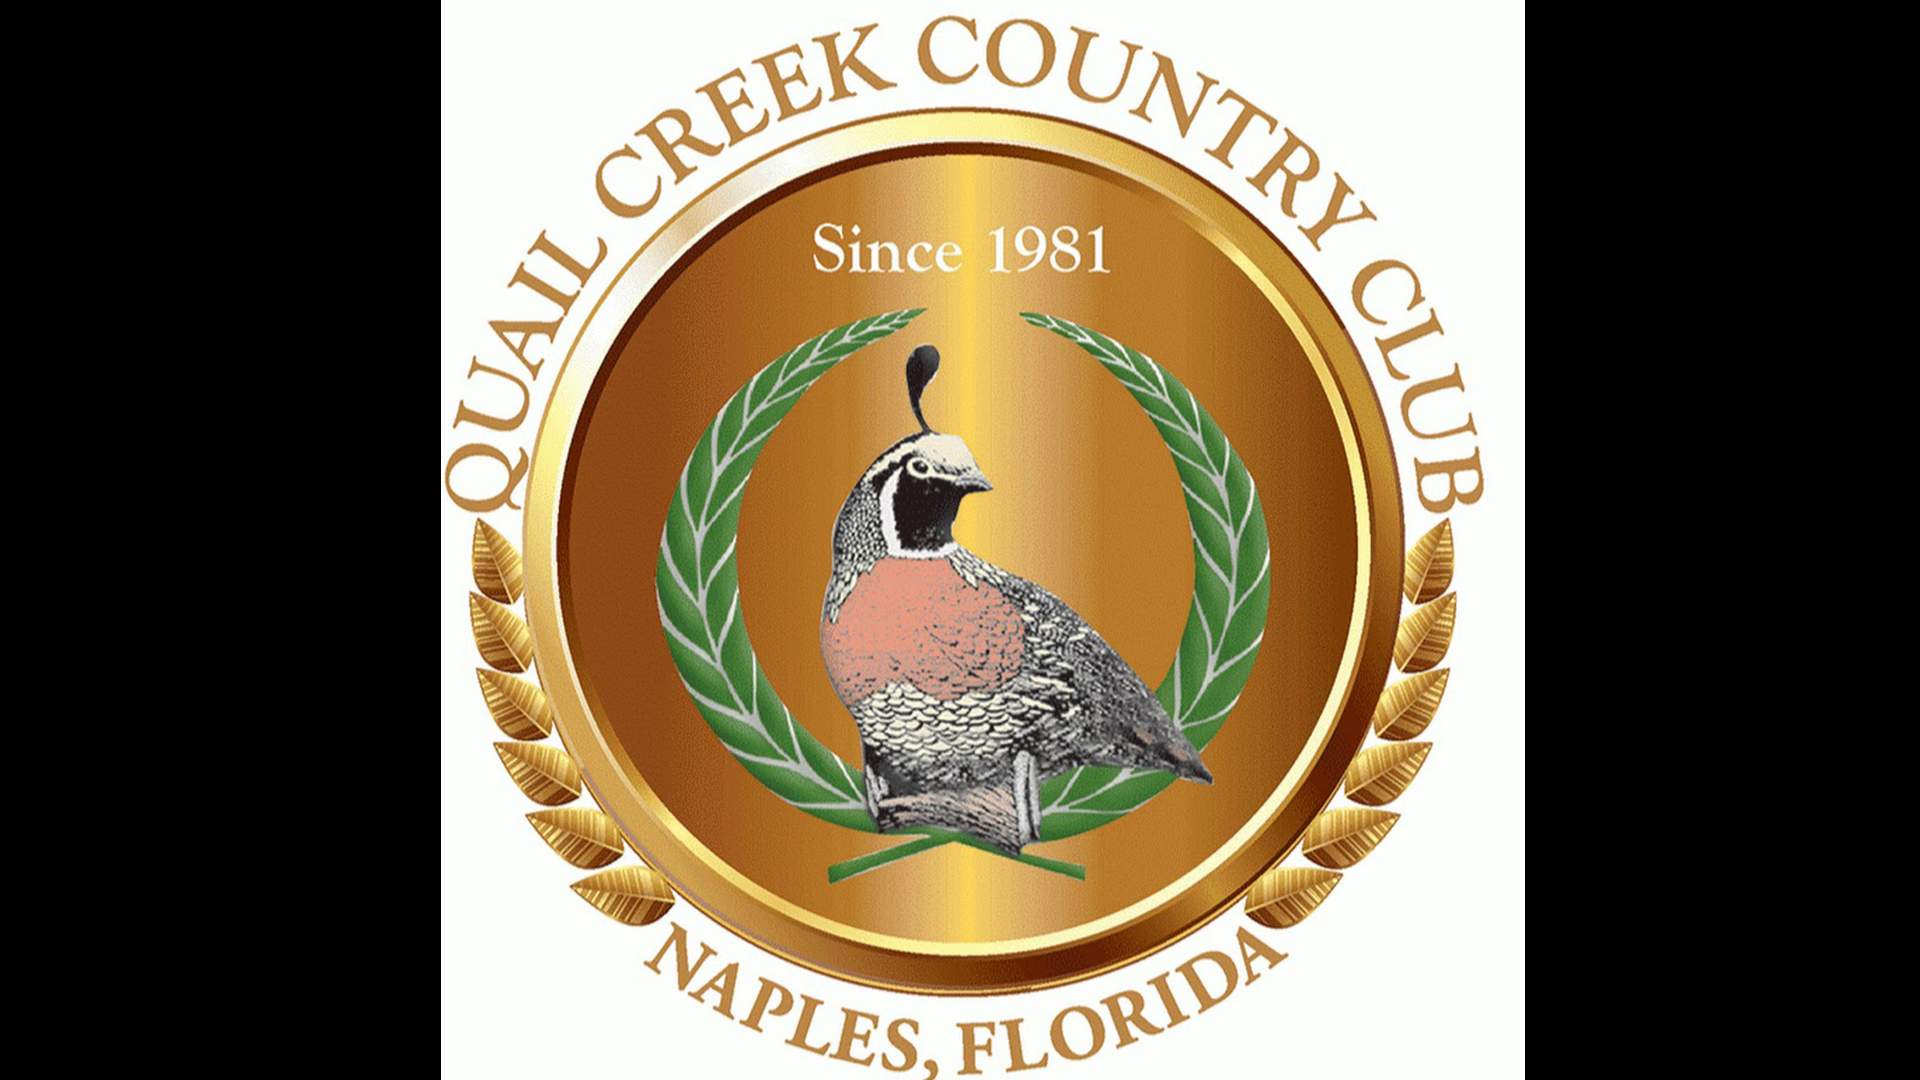 quail creek country club